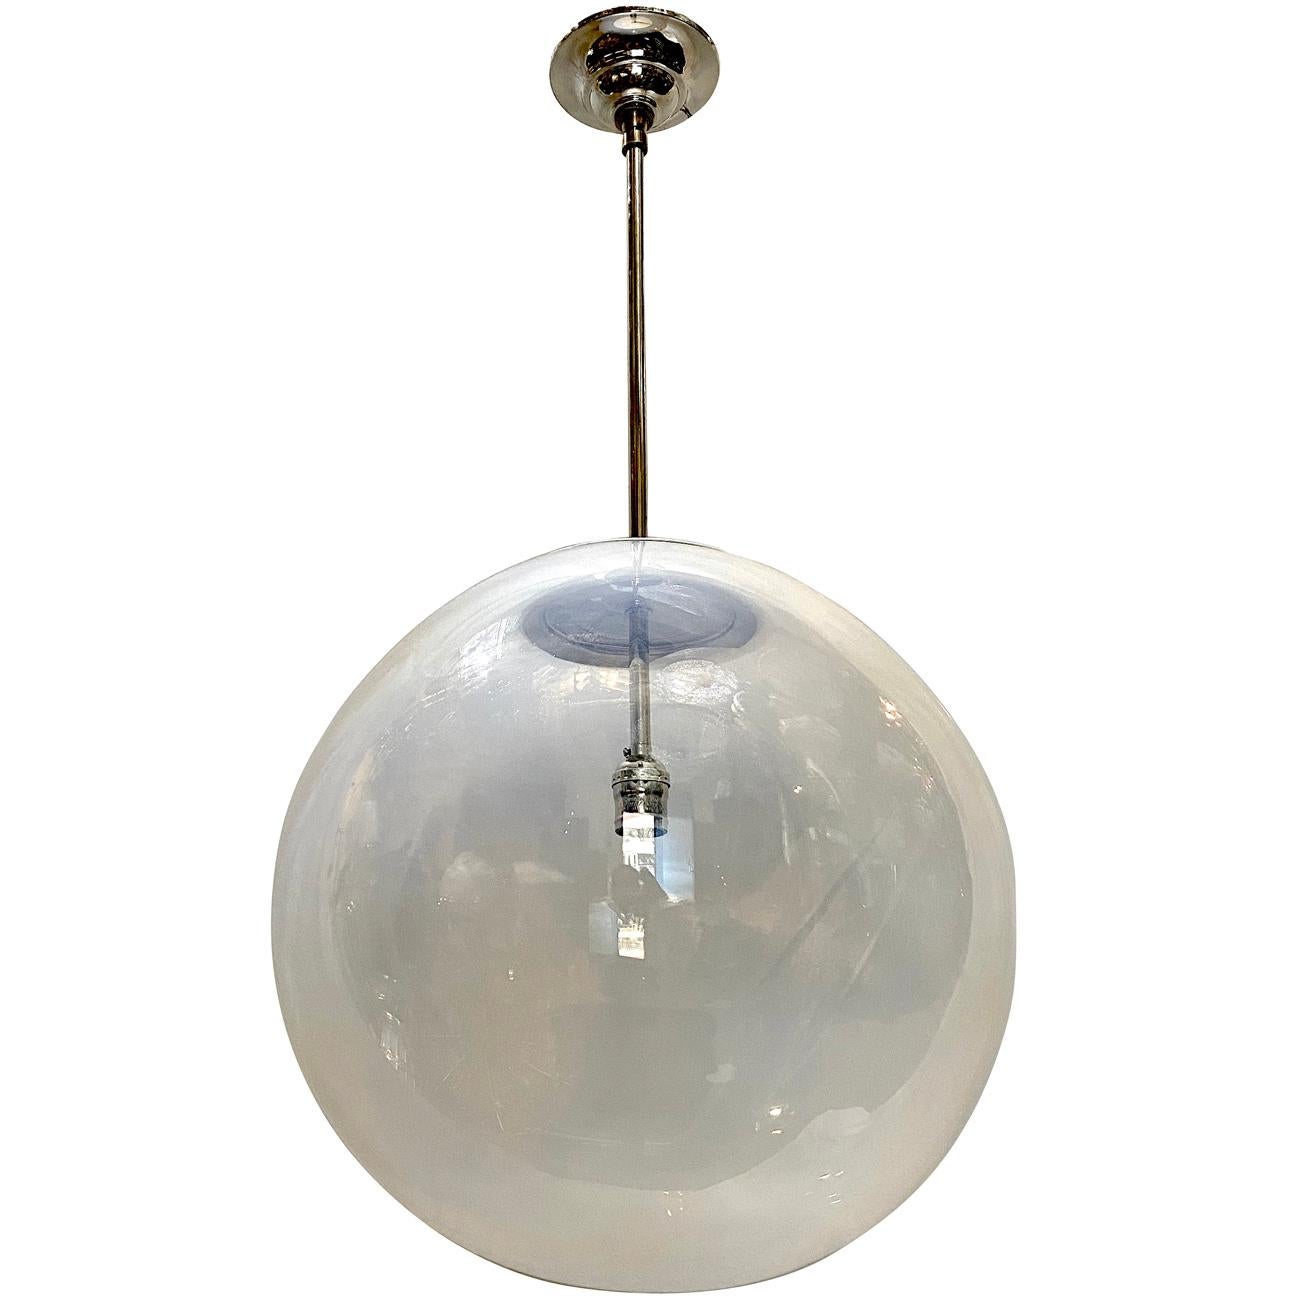 Eine große mundgeblasene Opalglasleuchte mit Innenbeleuchtung aus den 1960er Jahren.

Abmessungen:
Durchmesser 16